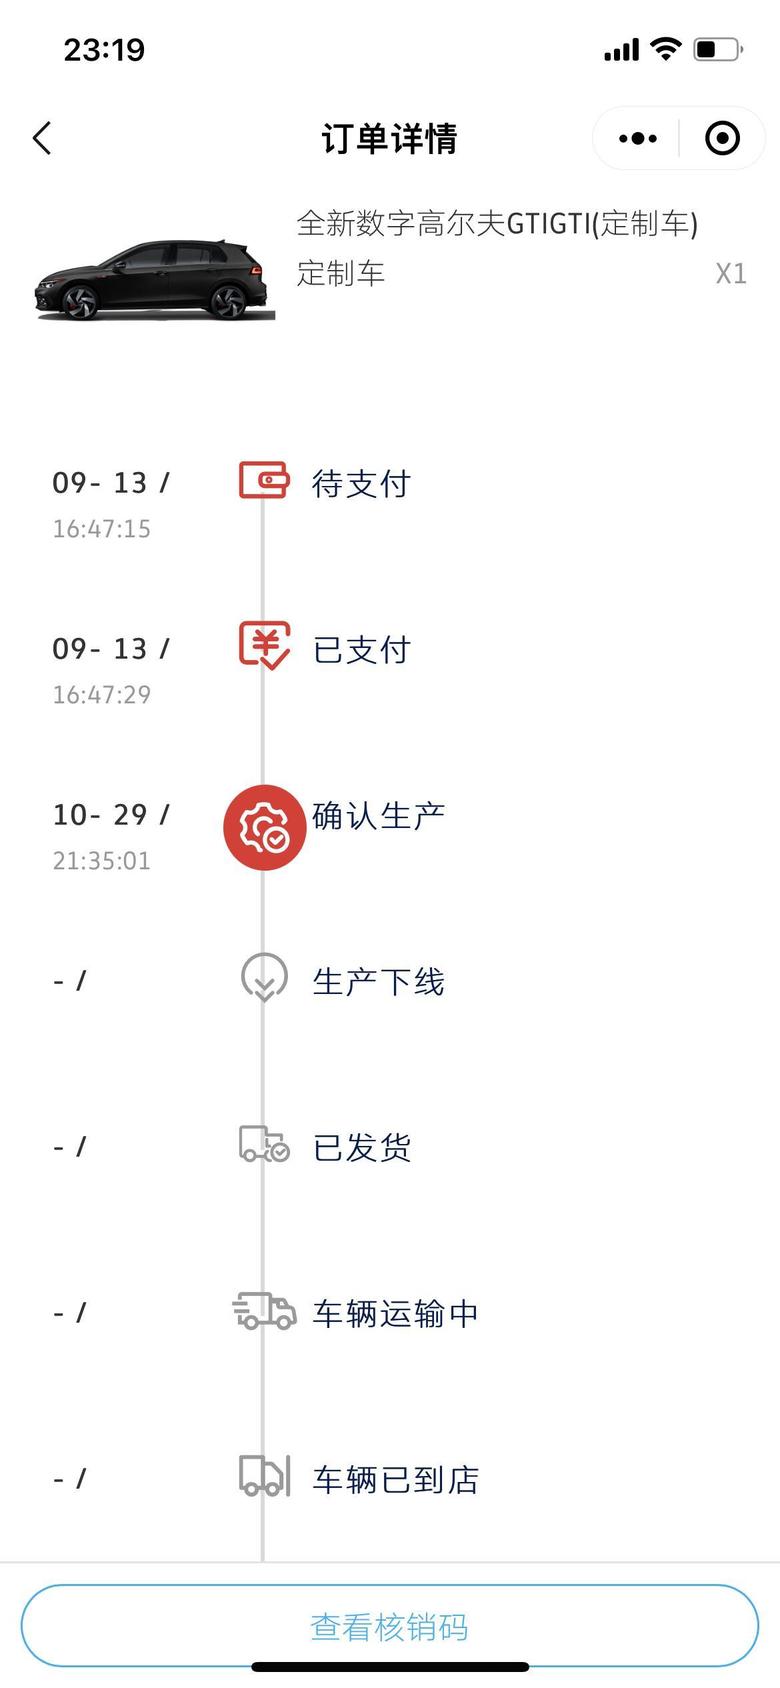 高尔夫 坐标江苏徐州，上面显示，预计生产完成的时间11月1日到7日。激动！